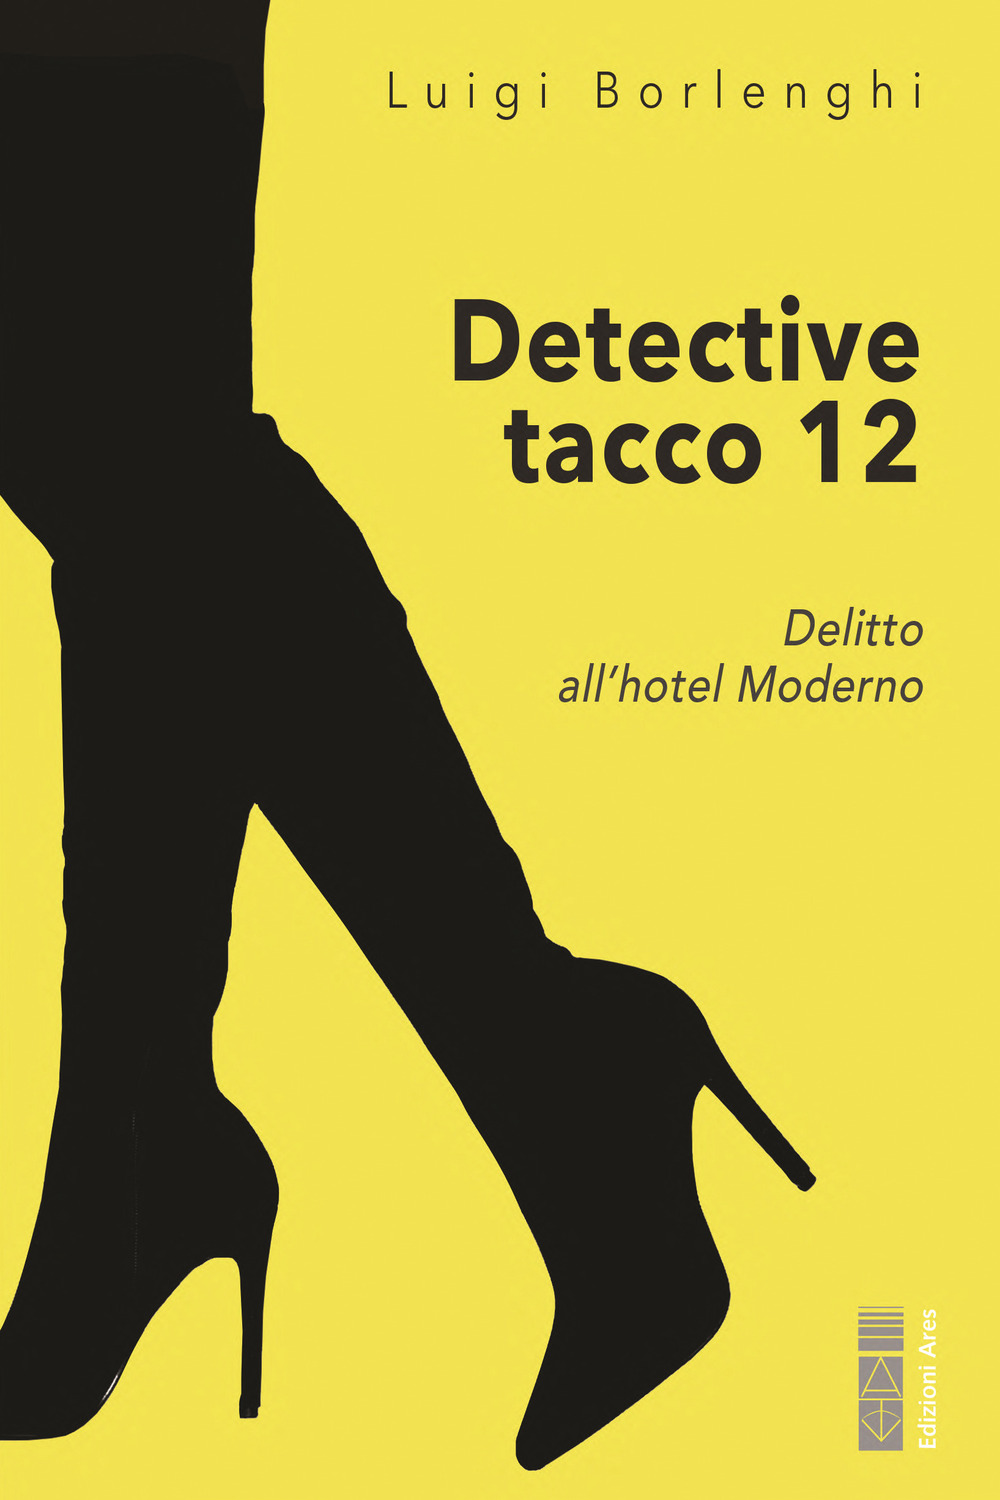 Detective tacco 12